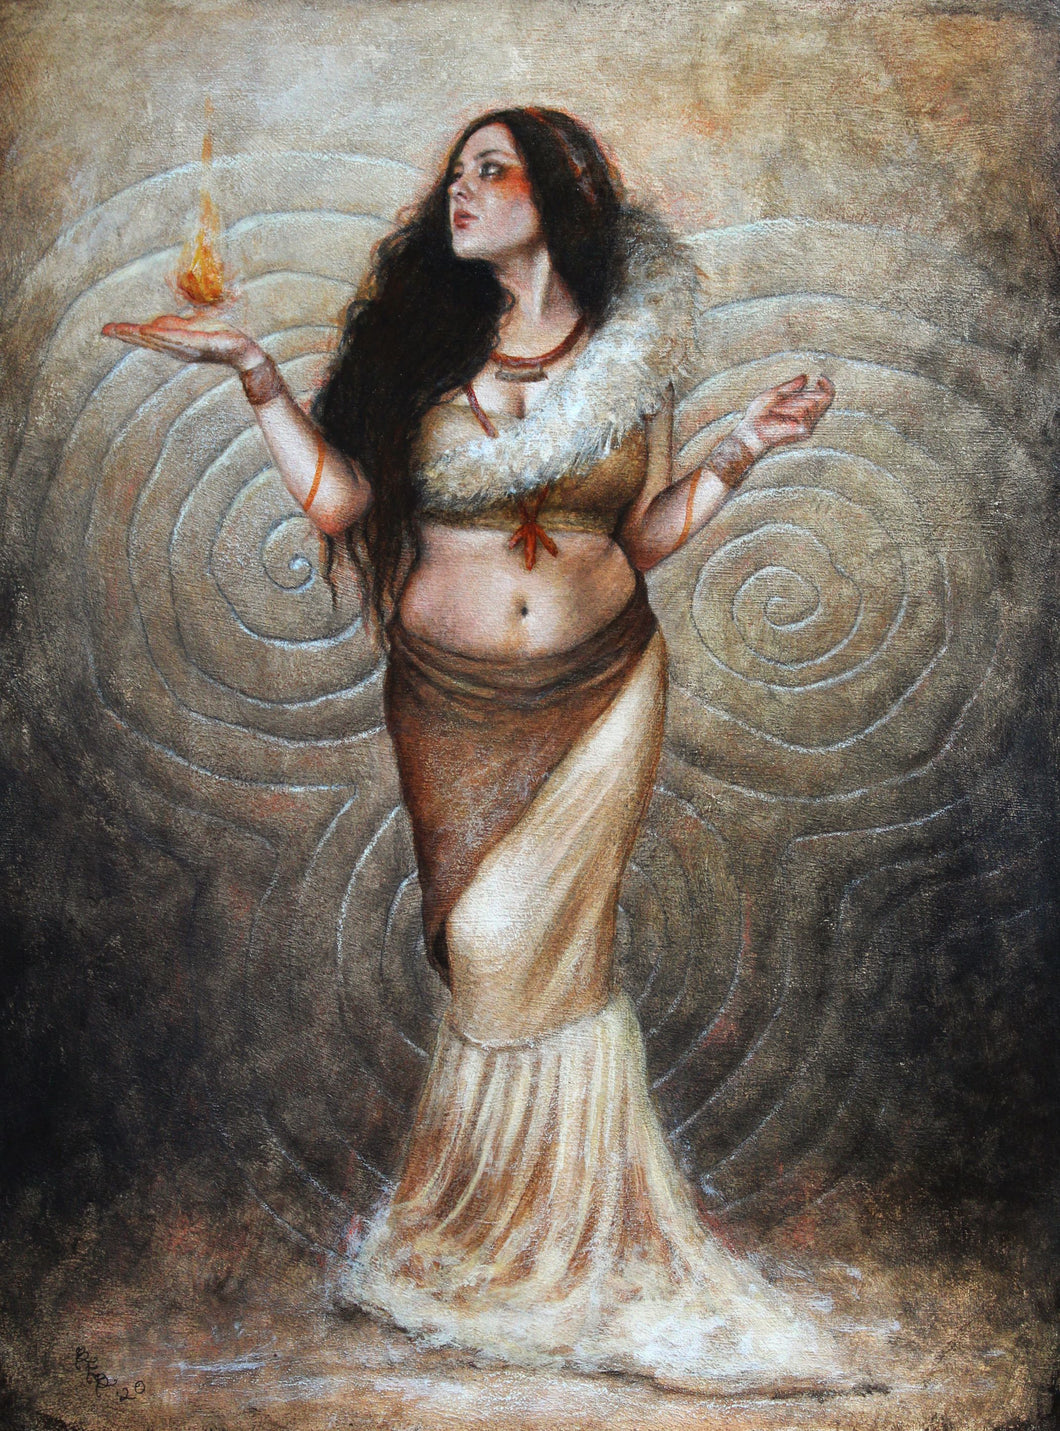 *PREORDER* Ancient Flame by Brynn Elizabeth